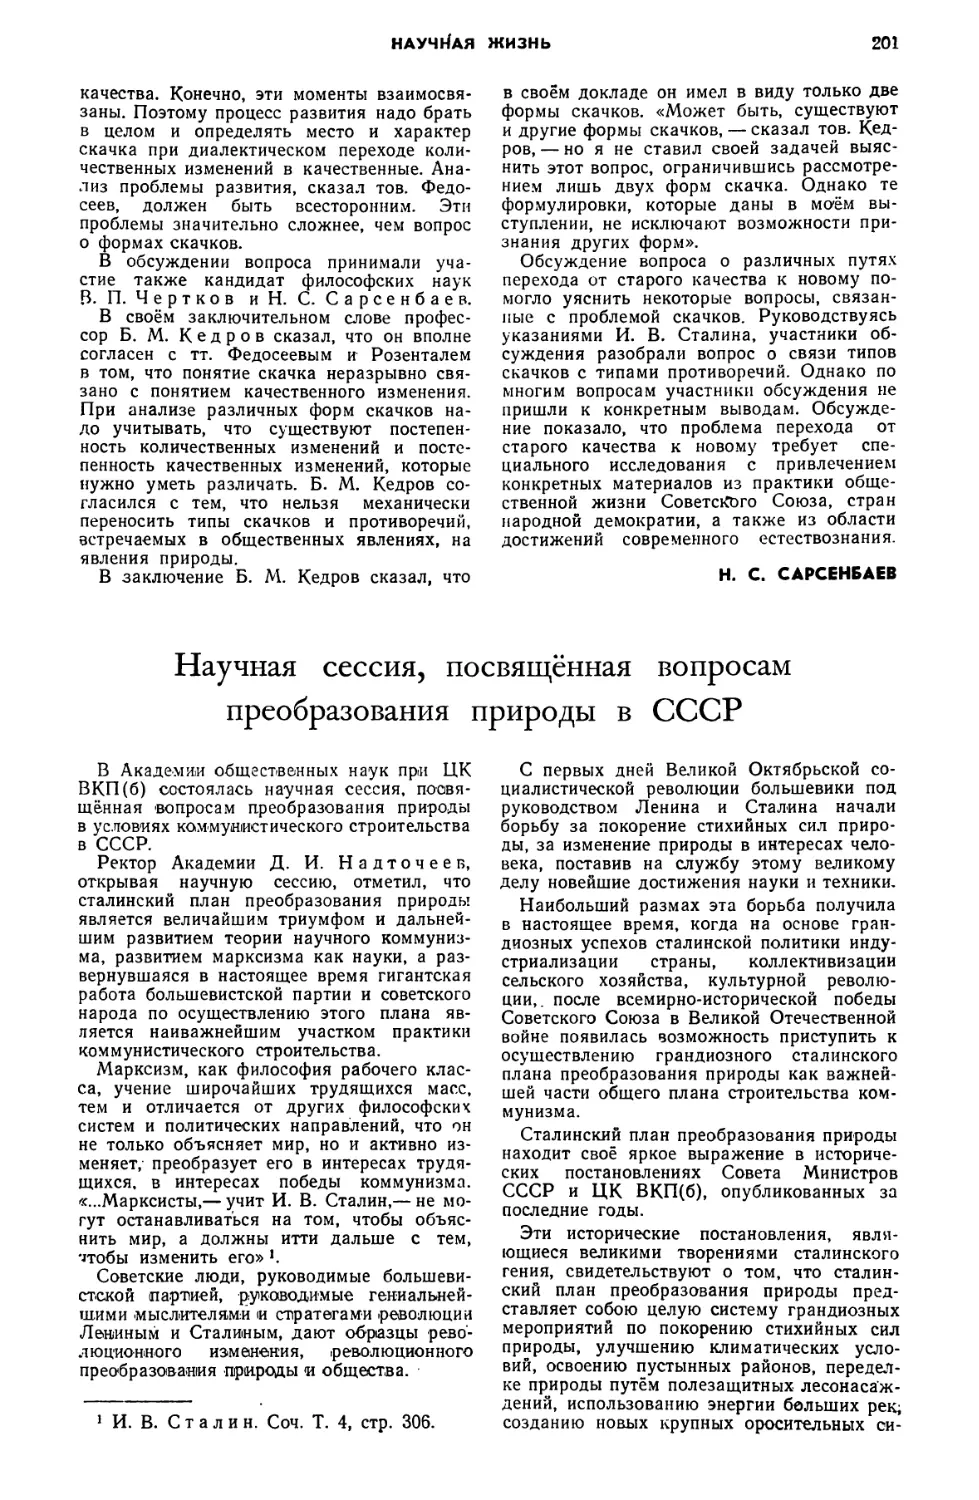 B. М. Каирян, В. Г. Семенов — Научная сессия, посвящённая вопросам преобразования природы в СССР